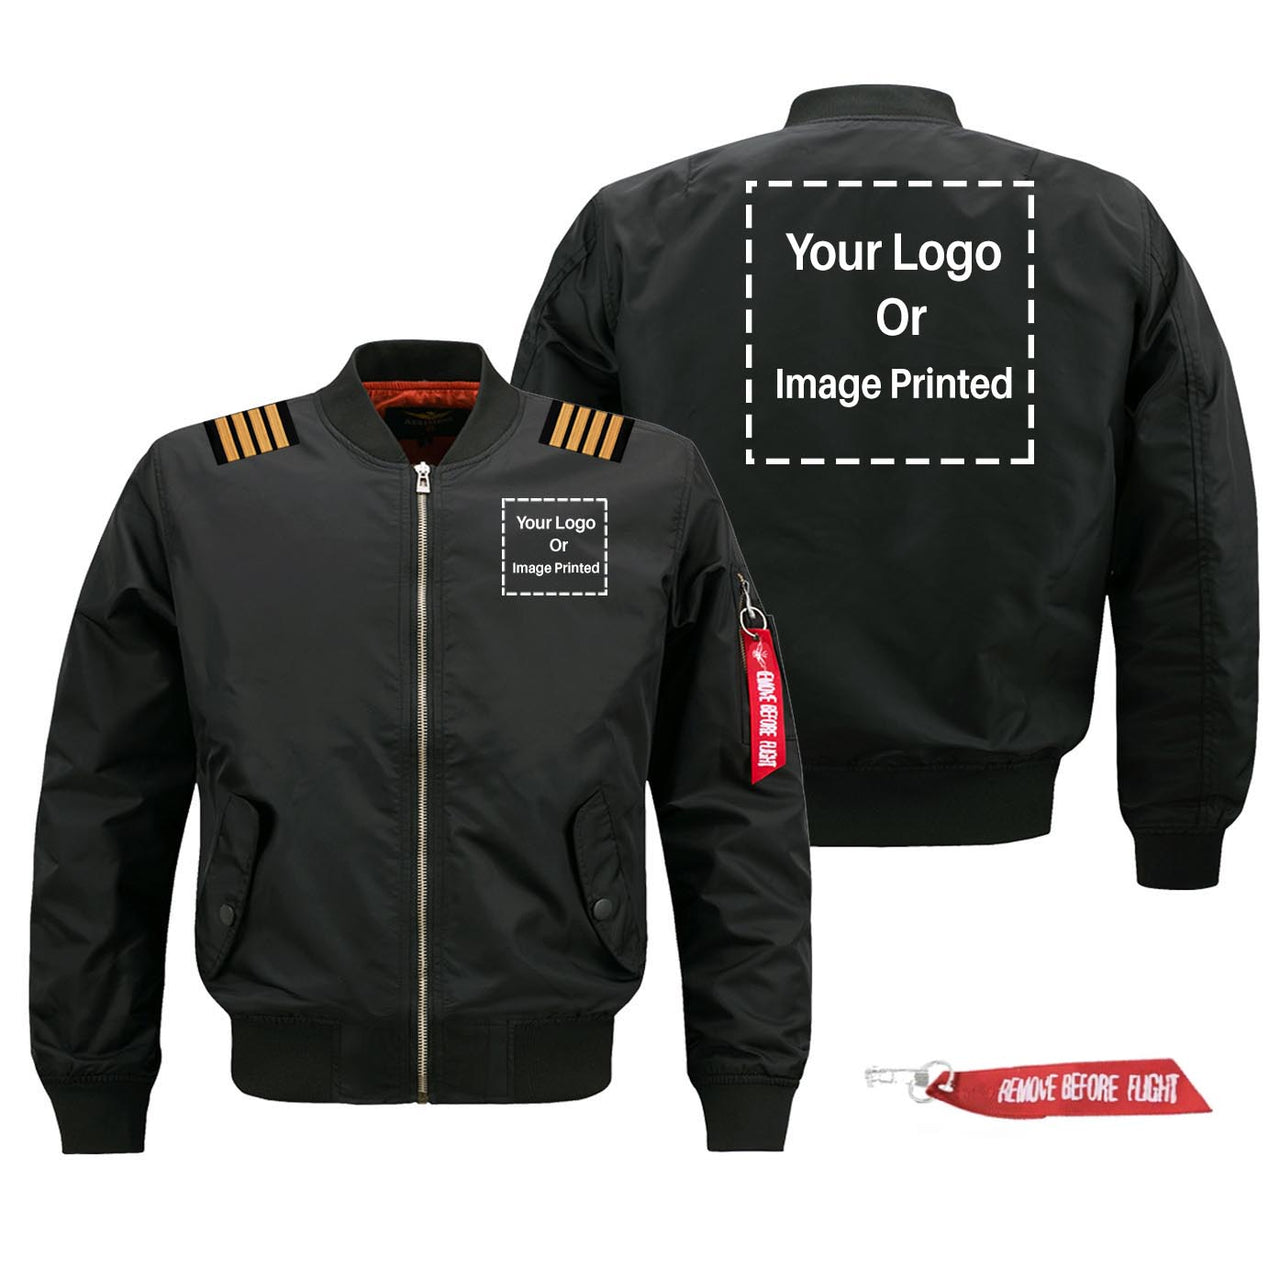 Custom Double LOGO & EPAULETTES Designed Pilot Jackets